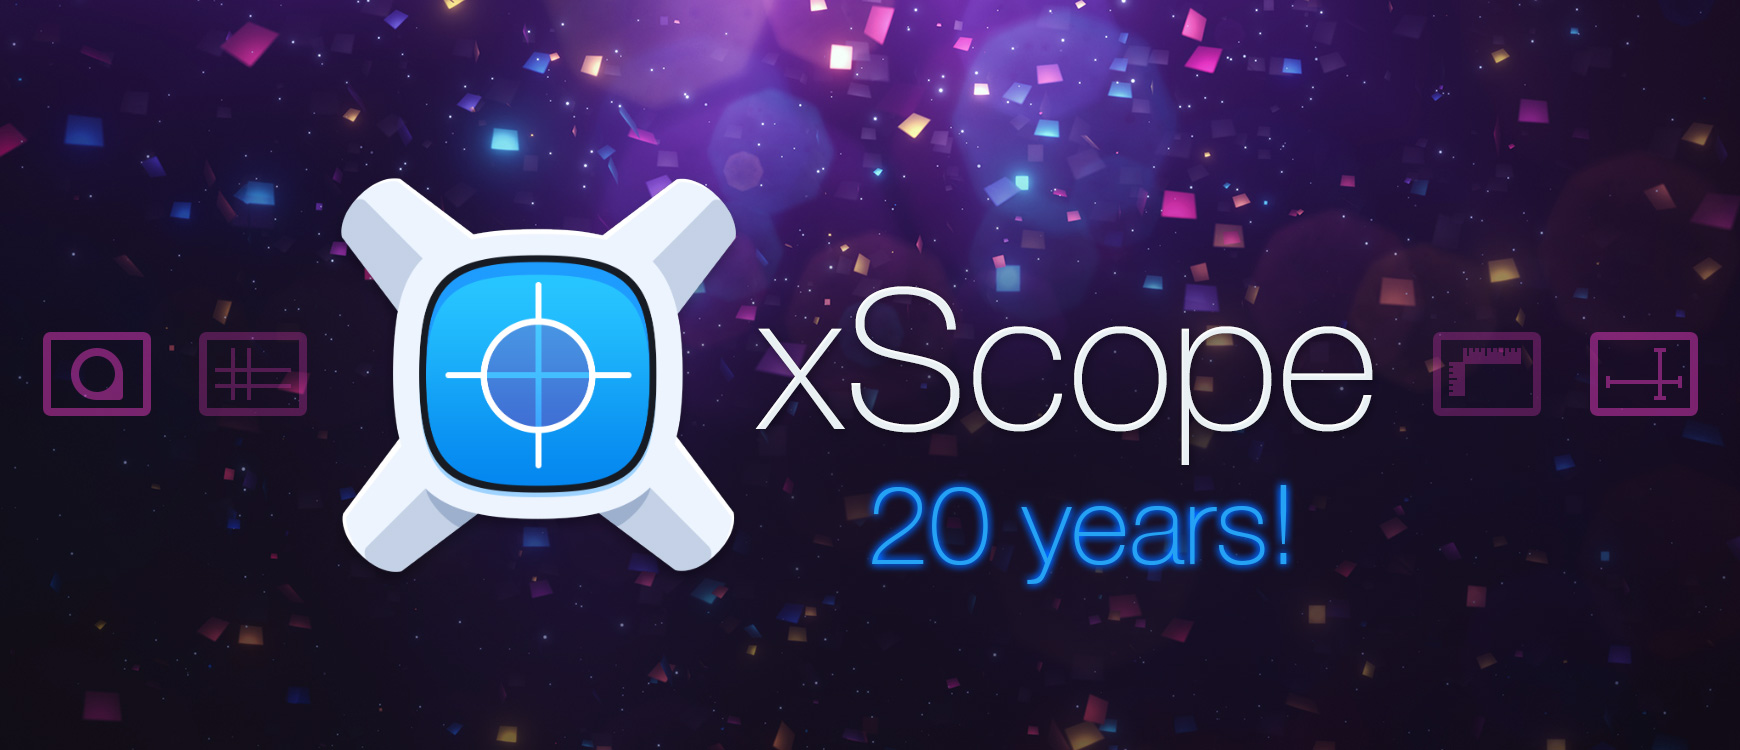 xScope 20 years!